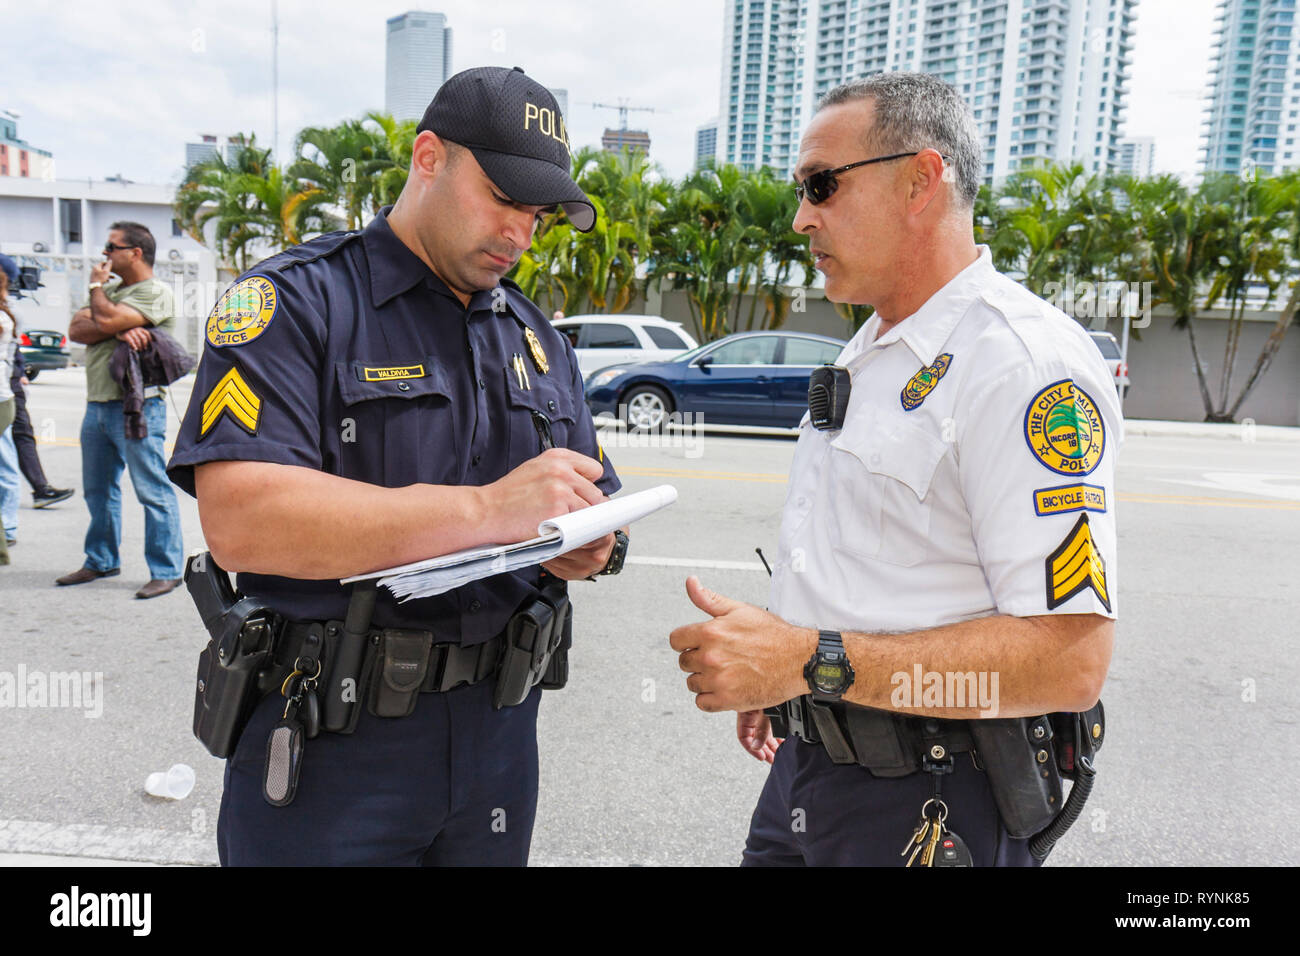 Miami Florida,uomo ispanico uomini maschio,polizia,poliziotto,ufficiale,uniforme,lavoro,lavoro,dipendenti lavoratori dipendenti personale,pubblica sicurezza,proteggere,sicurezza,parlare Foto Stock